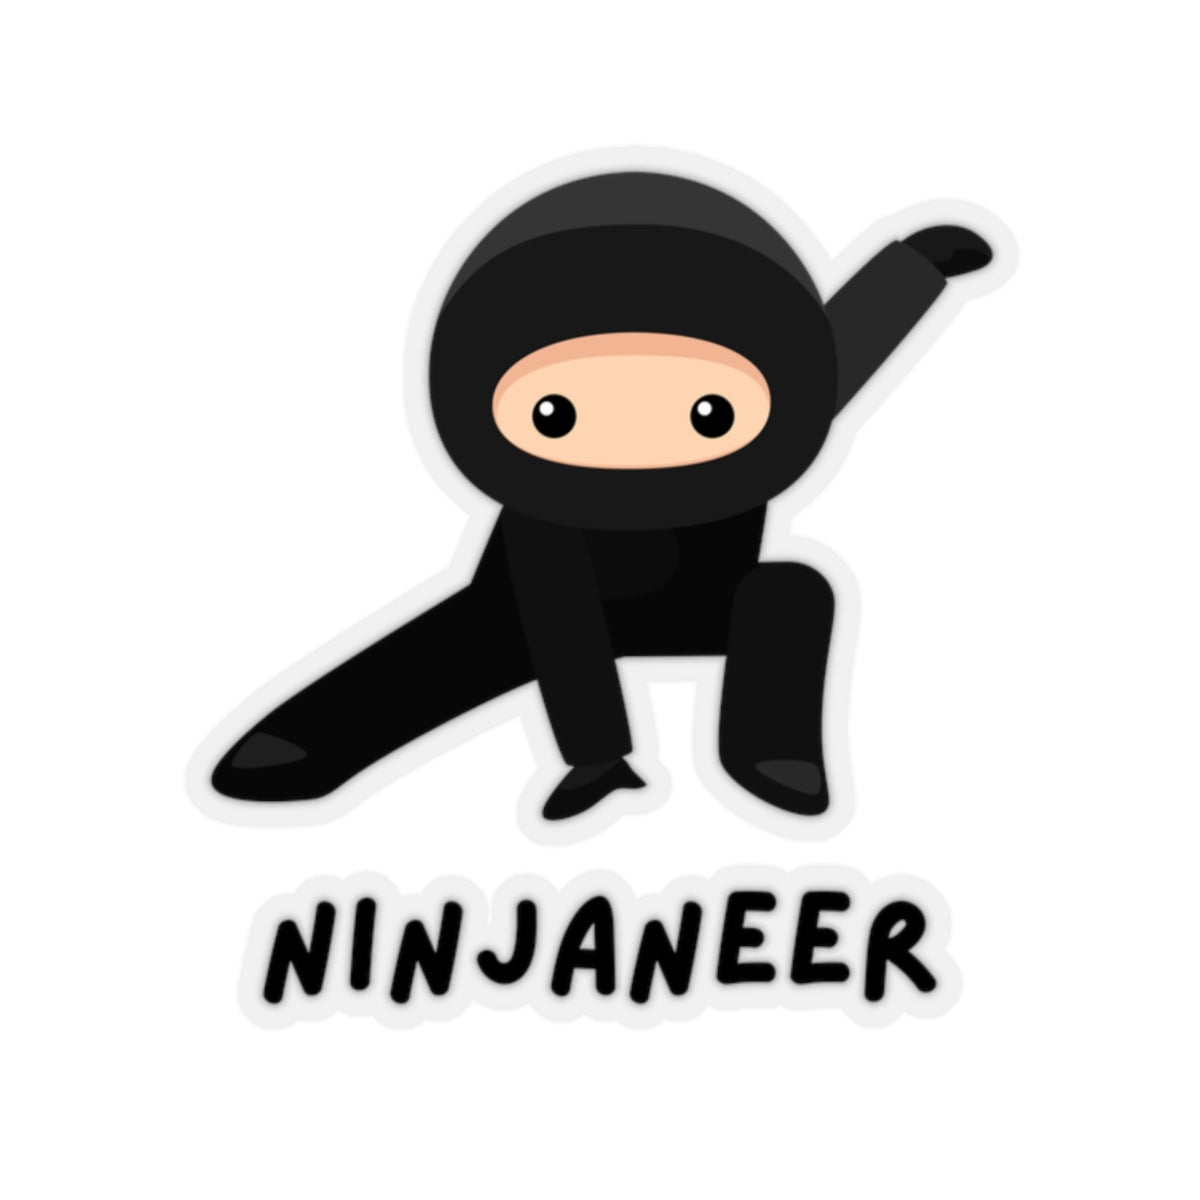 Ninjaneer - Developer / Programmer / Software Engineer Kiss Cut Sticker